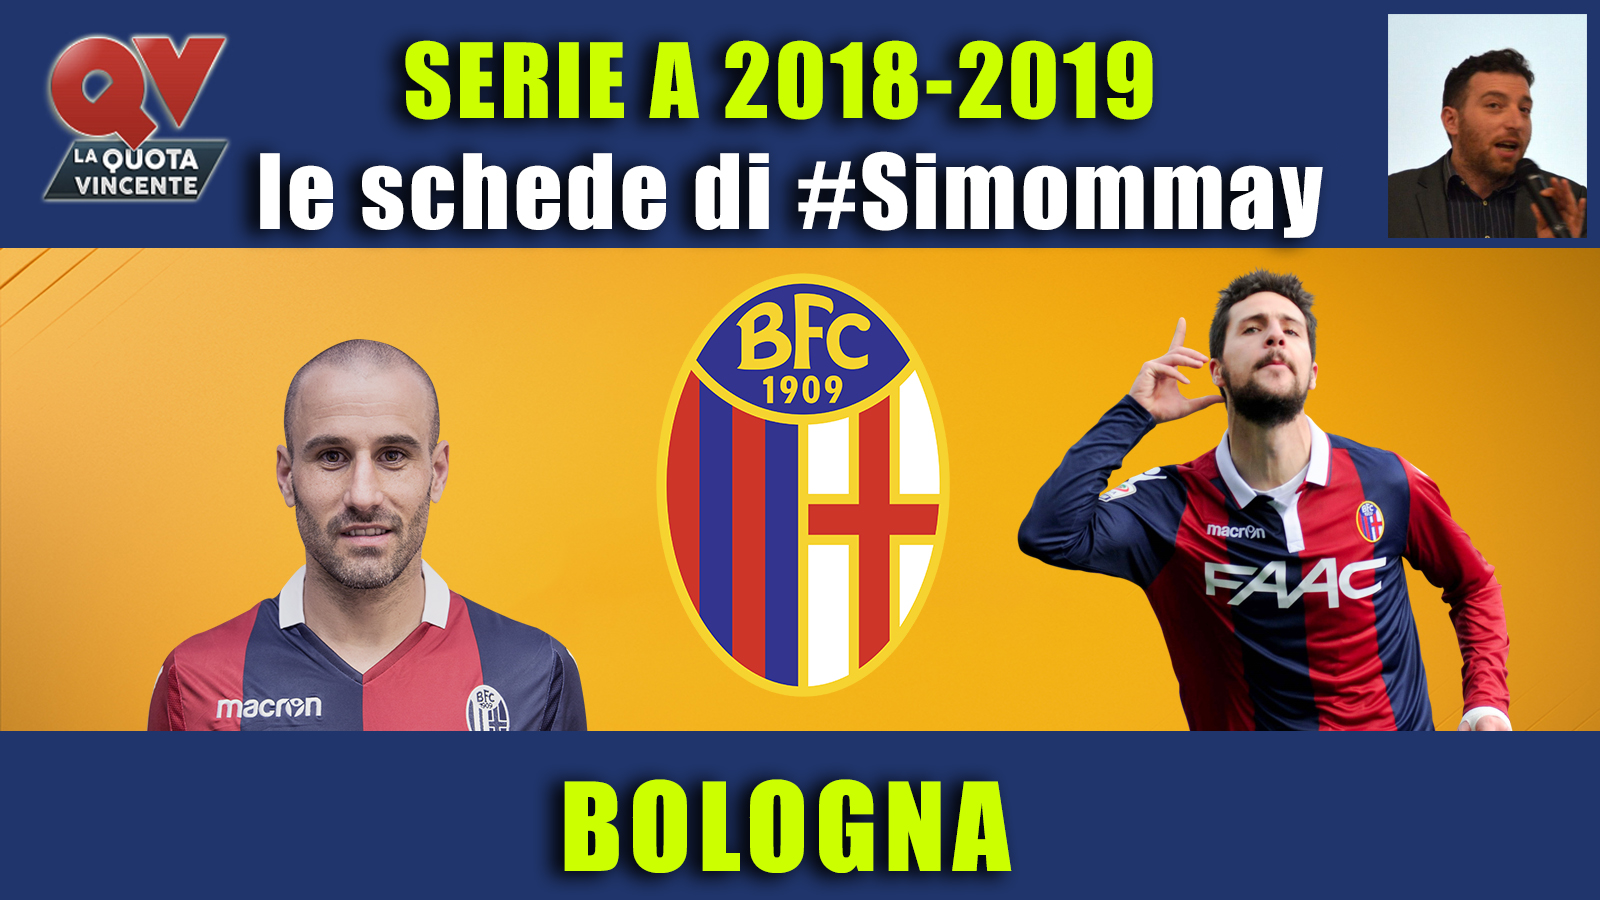 Guida Serie A 2018-2019 BOLOGNA: la nuova era Pippo Inzaghi